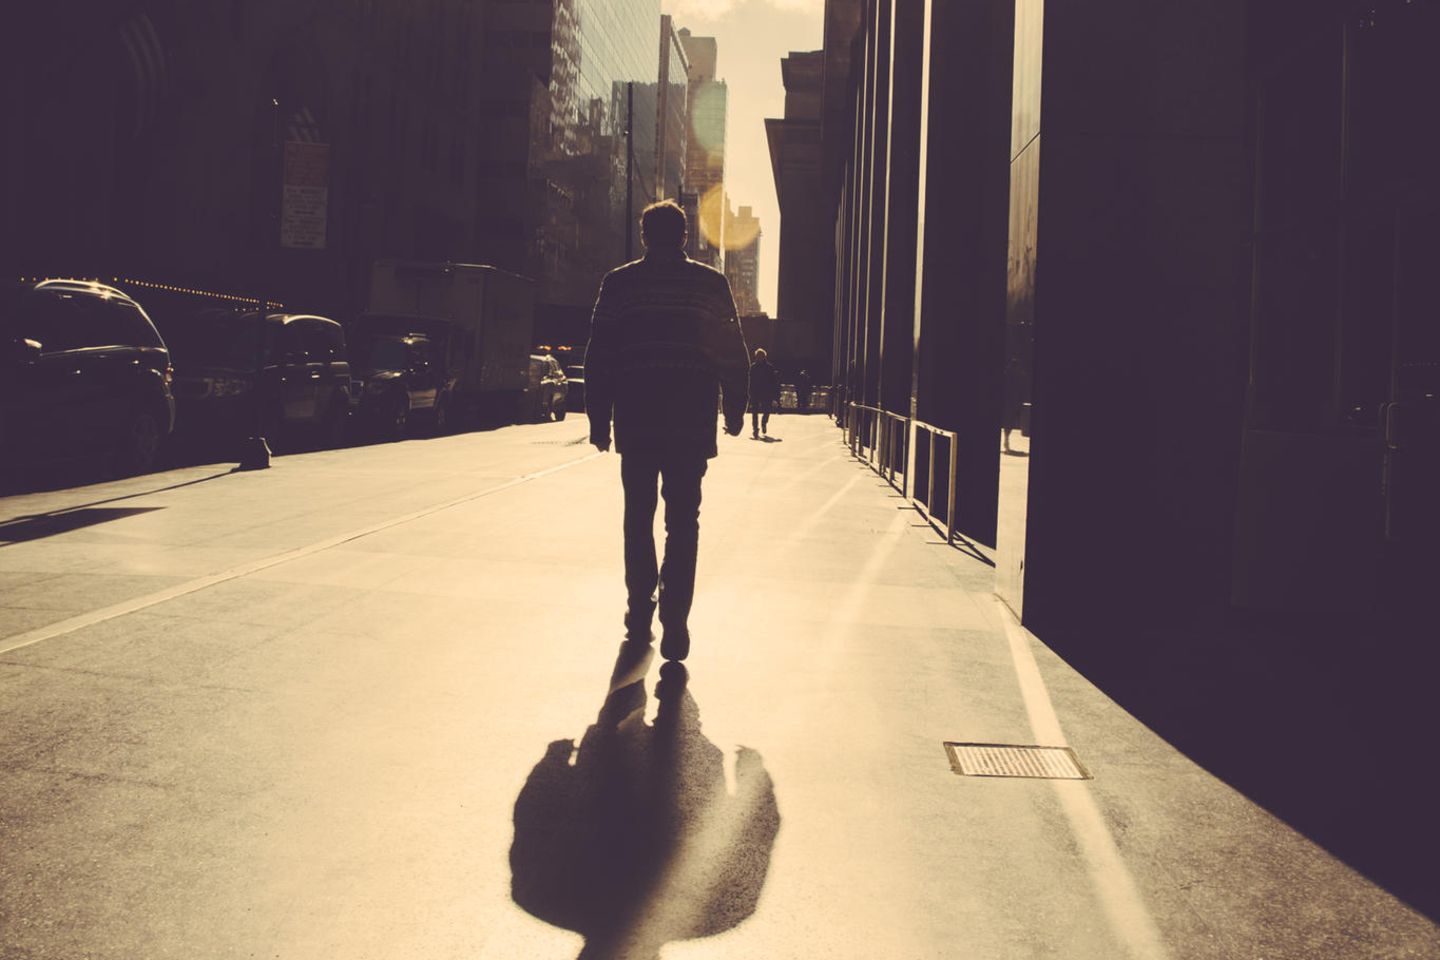 Datepartner taucht ab: Mann und sein Schatten in der Großstadt